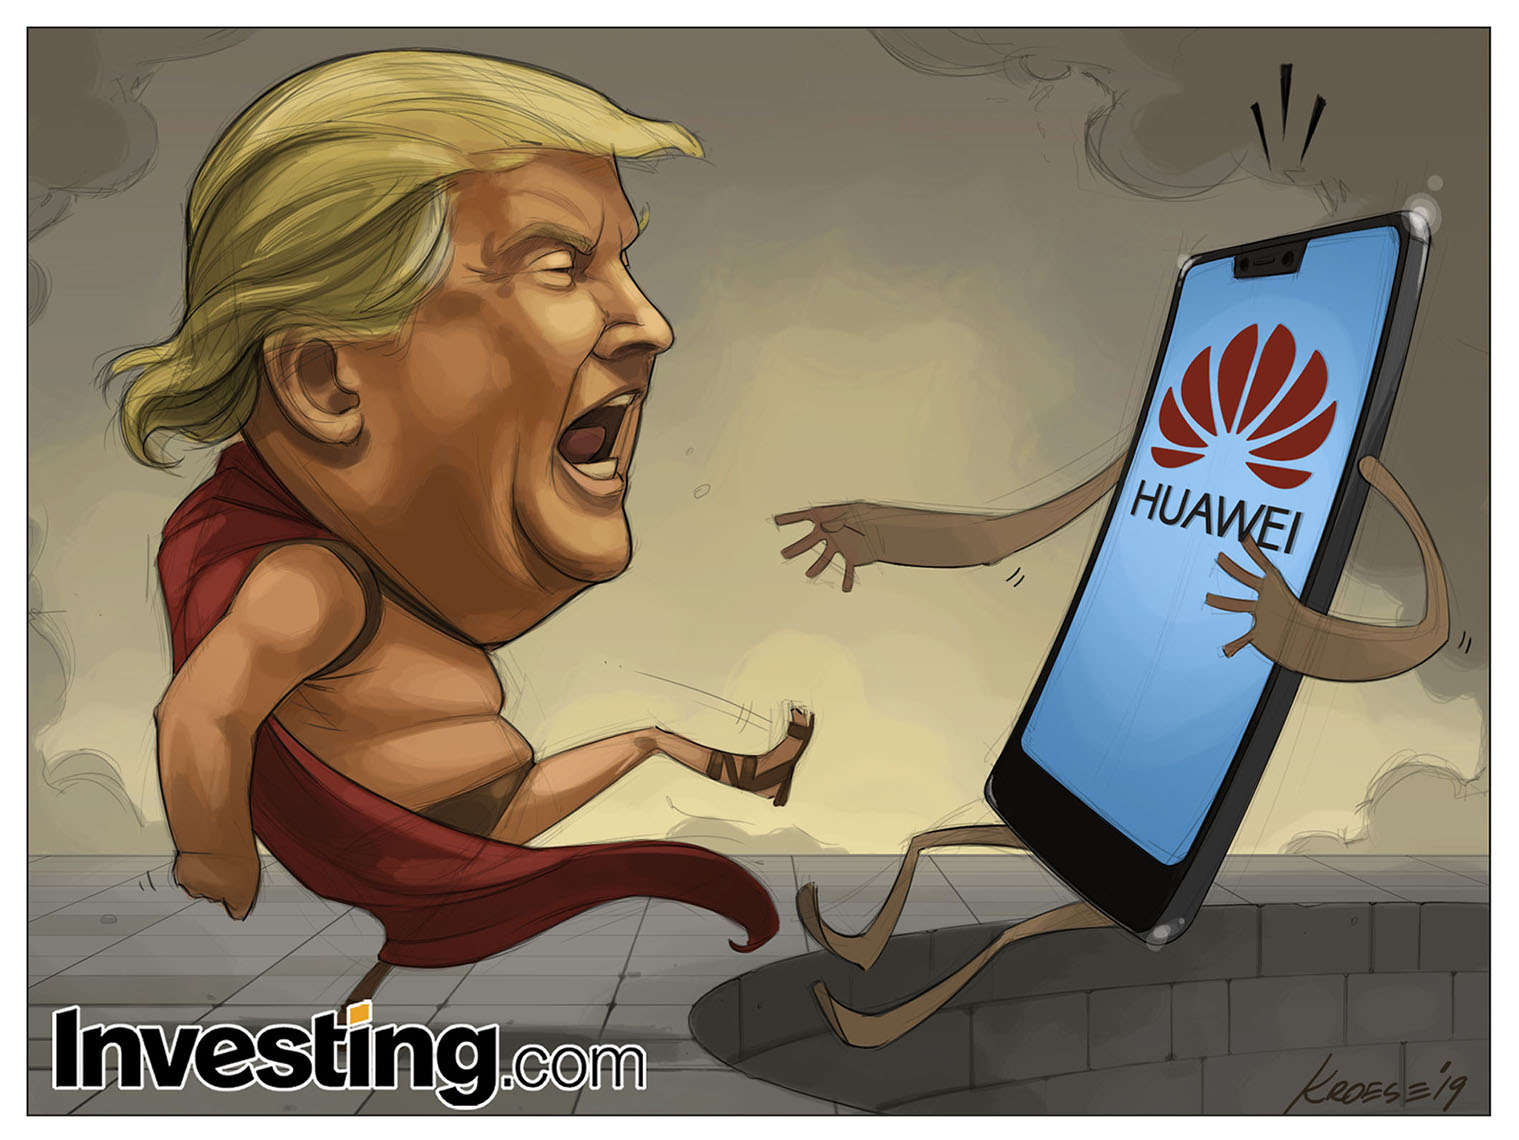 Trumps drag att svartlista Huawei skakar om finansmarknader